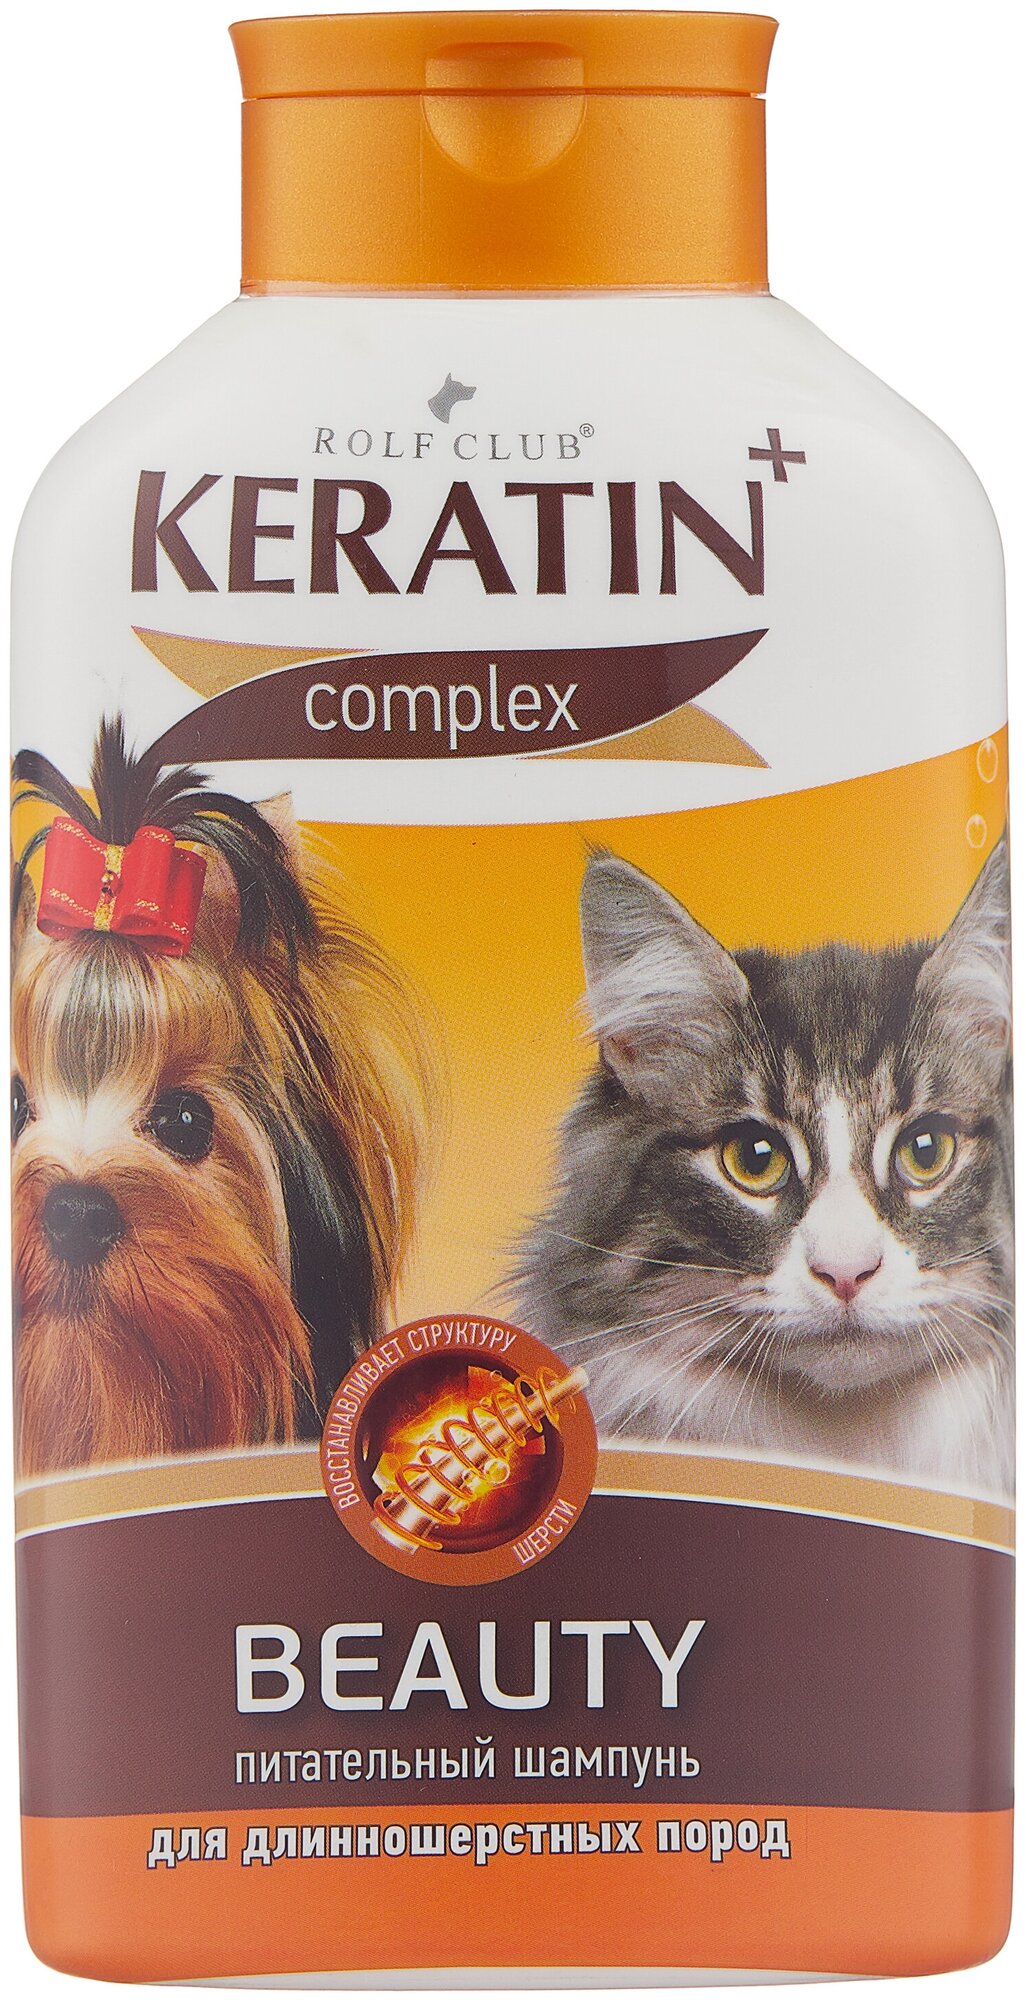 Шампунь для длинношерстных кошек и собак, RolfClub KERATIN+ Beauty, 400 мл